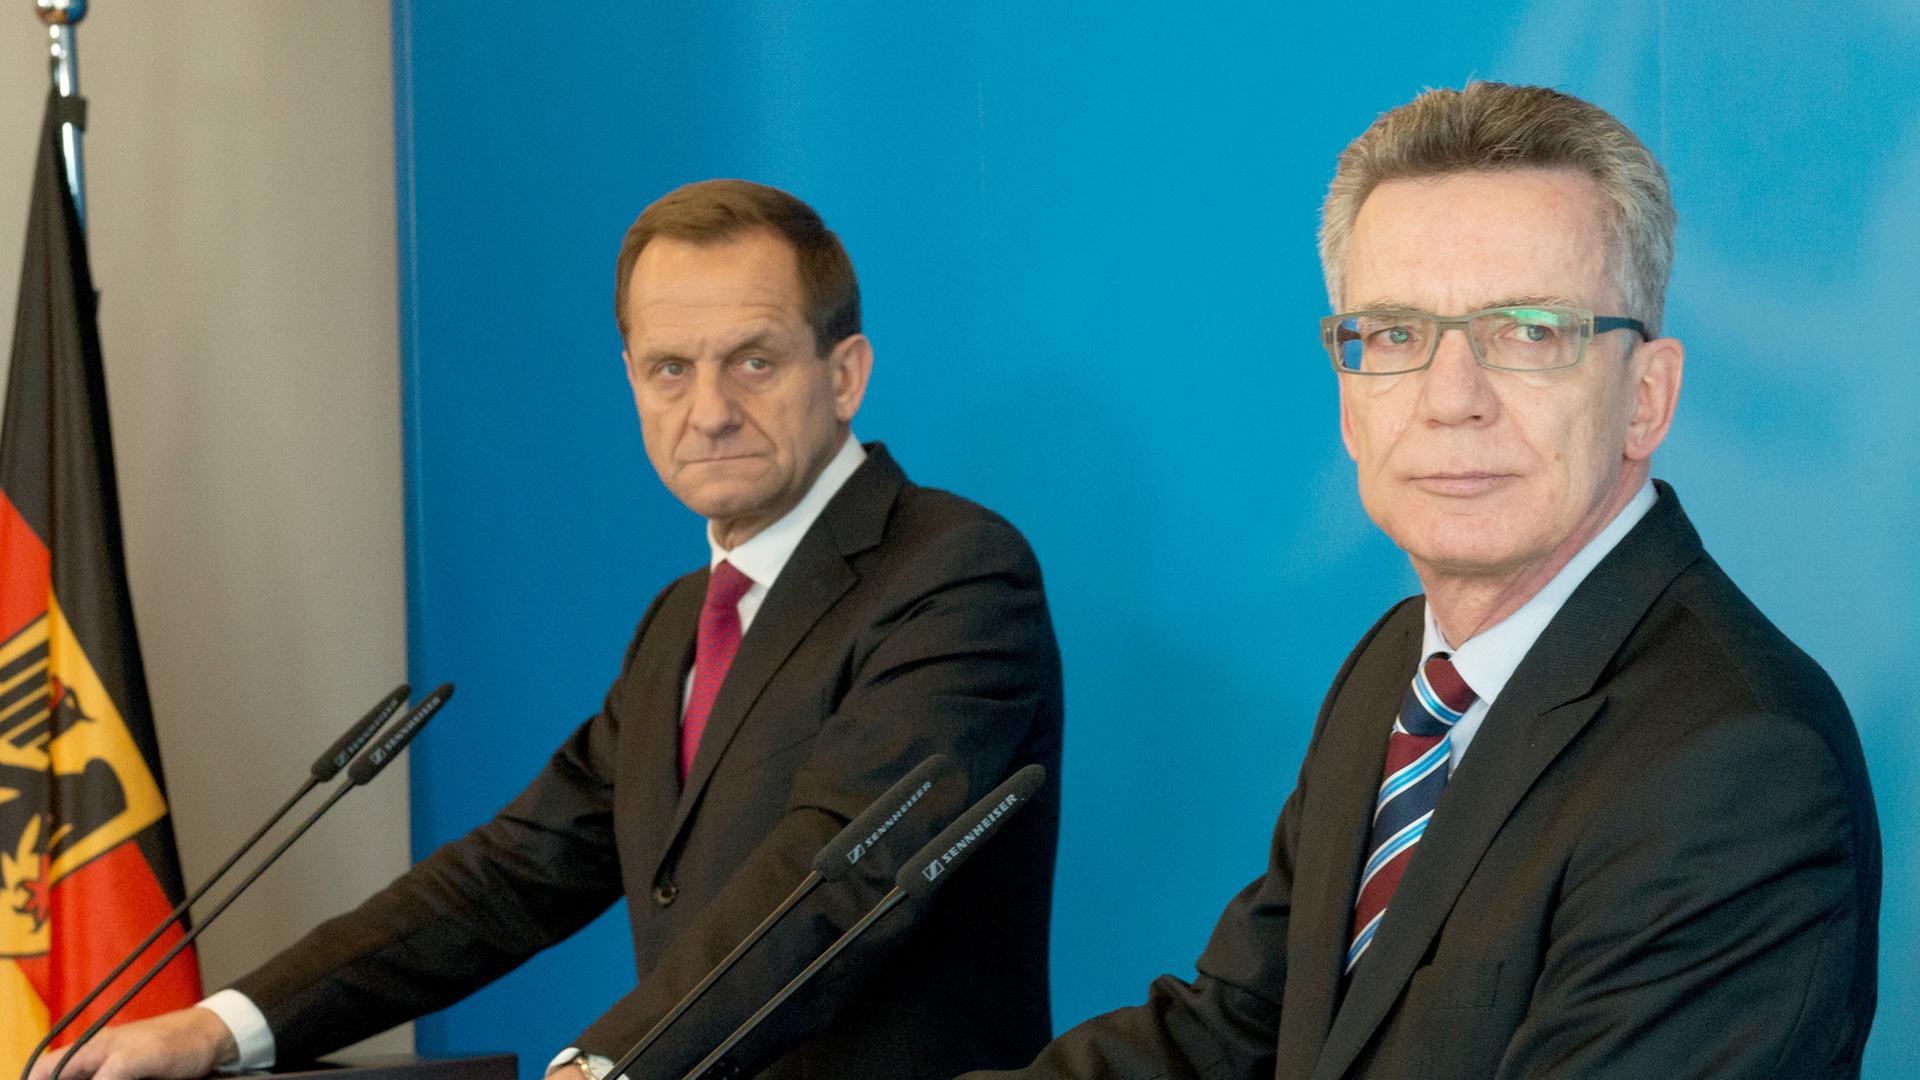 Bundesinnenminister Thomas de Maiziere (CDU, r) und der Präsident des Deutschen Olympischen Sportbundes (DOSB), Alfons Hörmann, geben 11.03.2015 in Berlin eine Pressekonferenz.